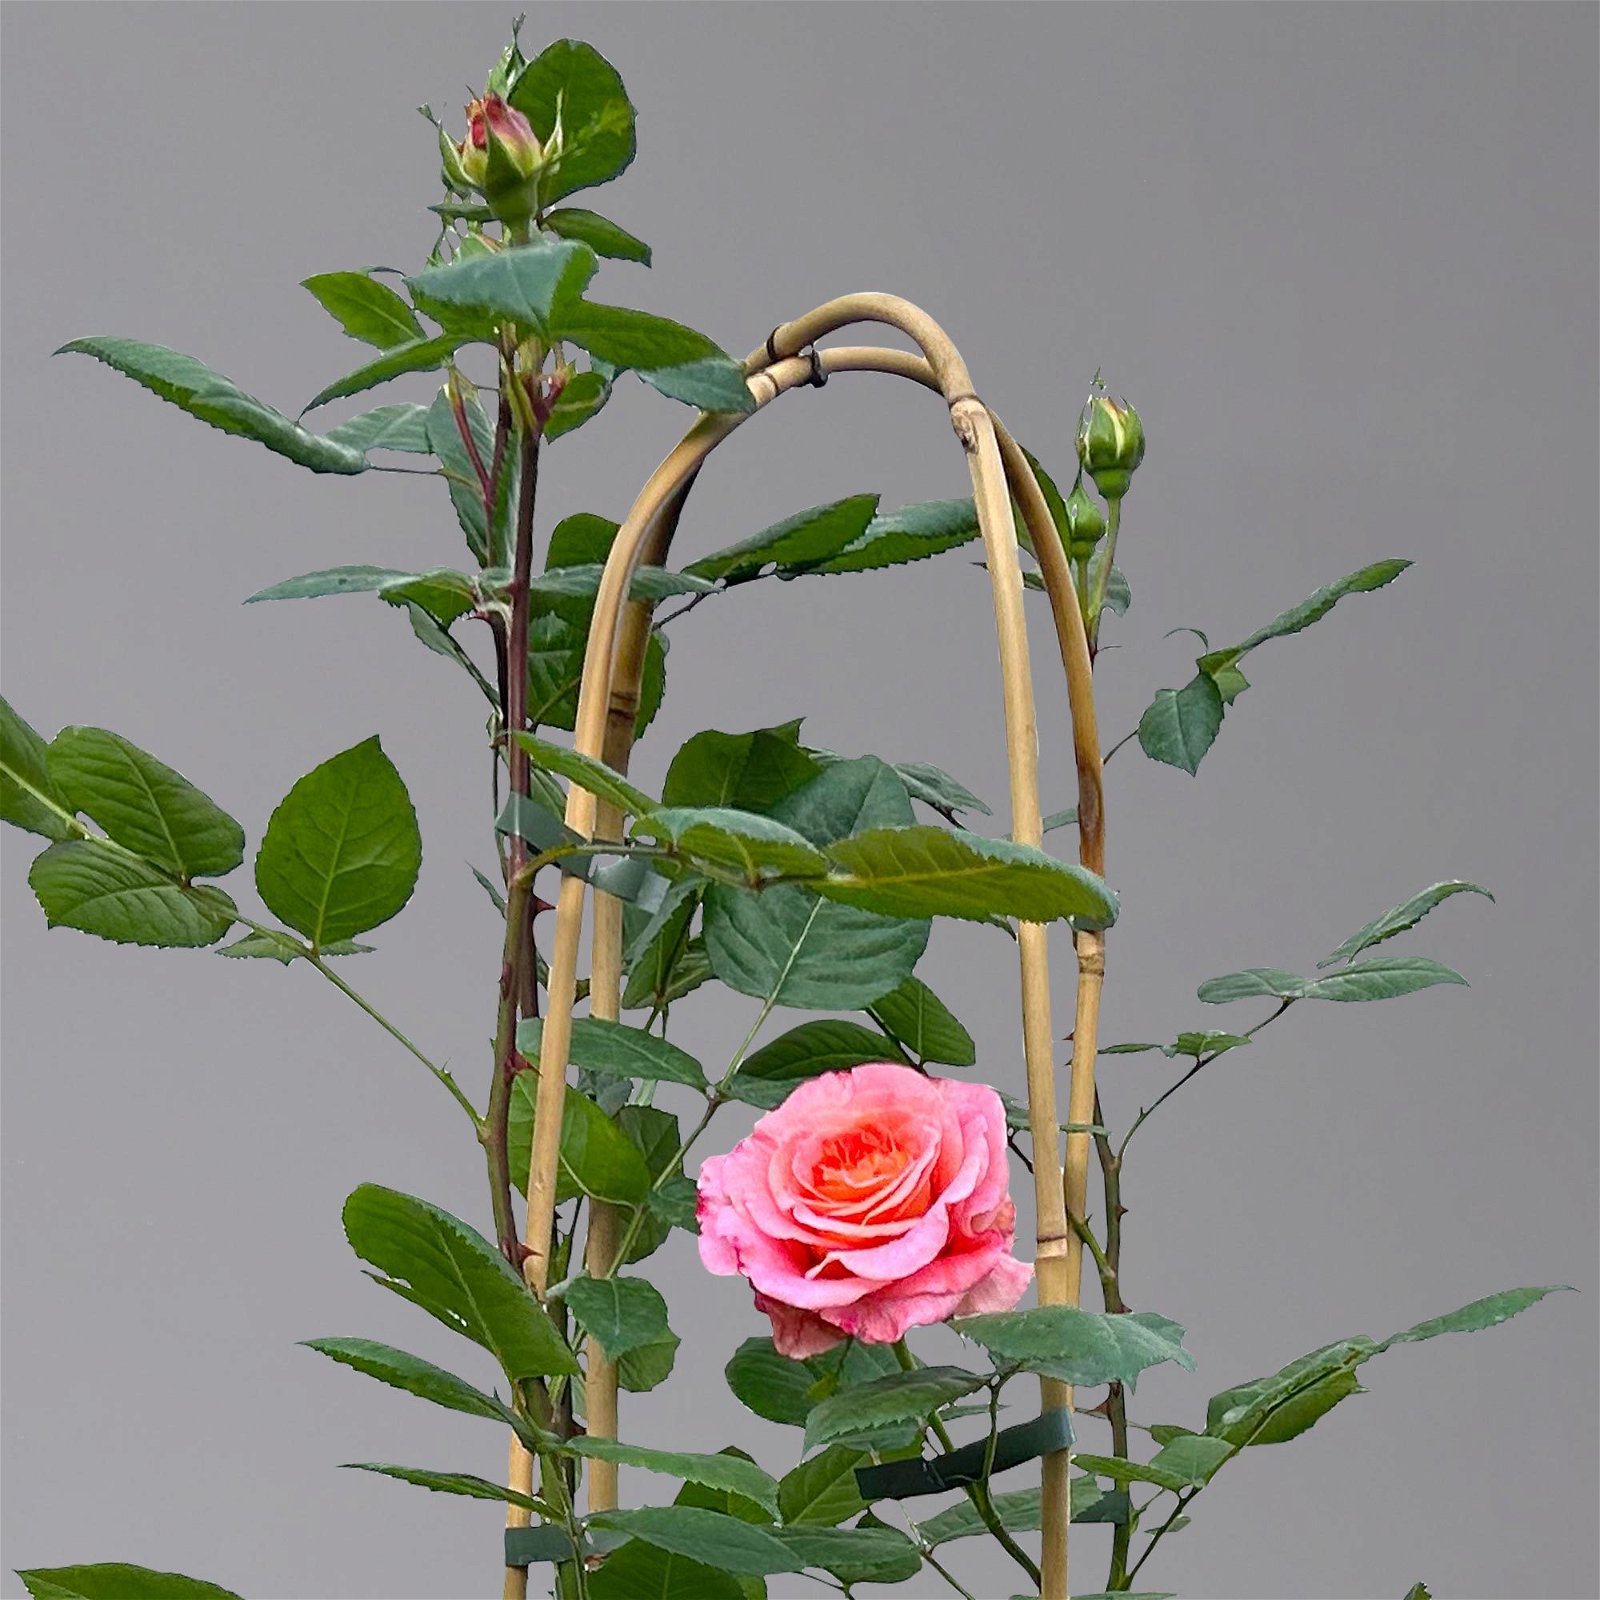 Duftende Edelrose 'Augusta Luise®', rose-aprikot, Doppelbogen, Topf 10 Liter